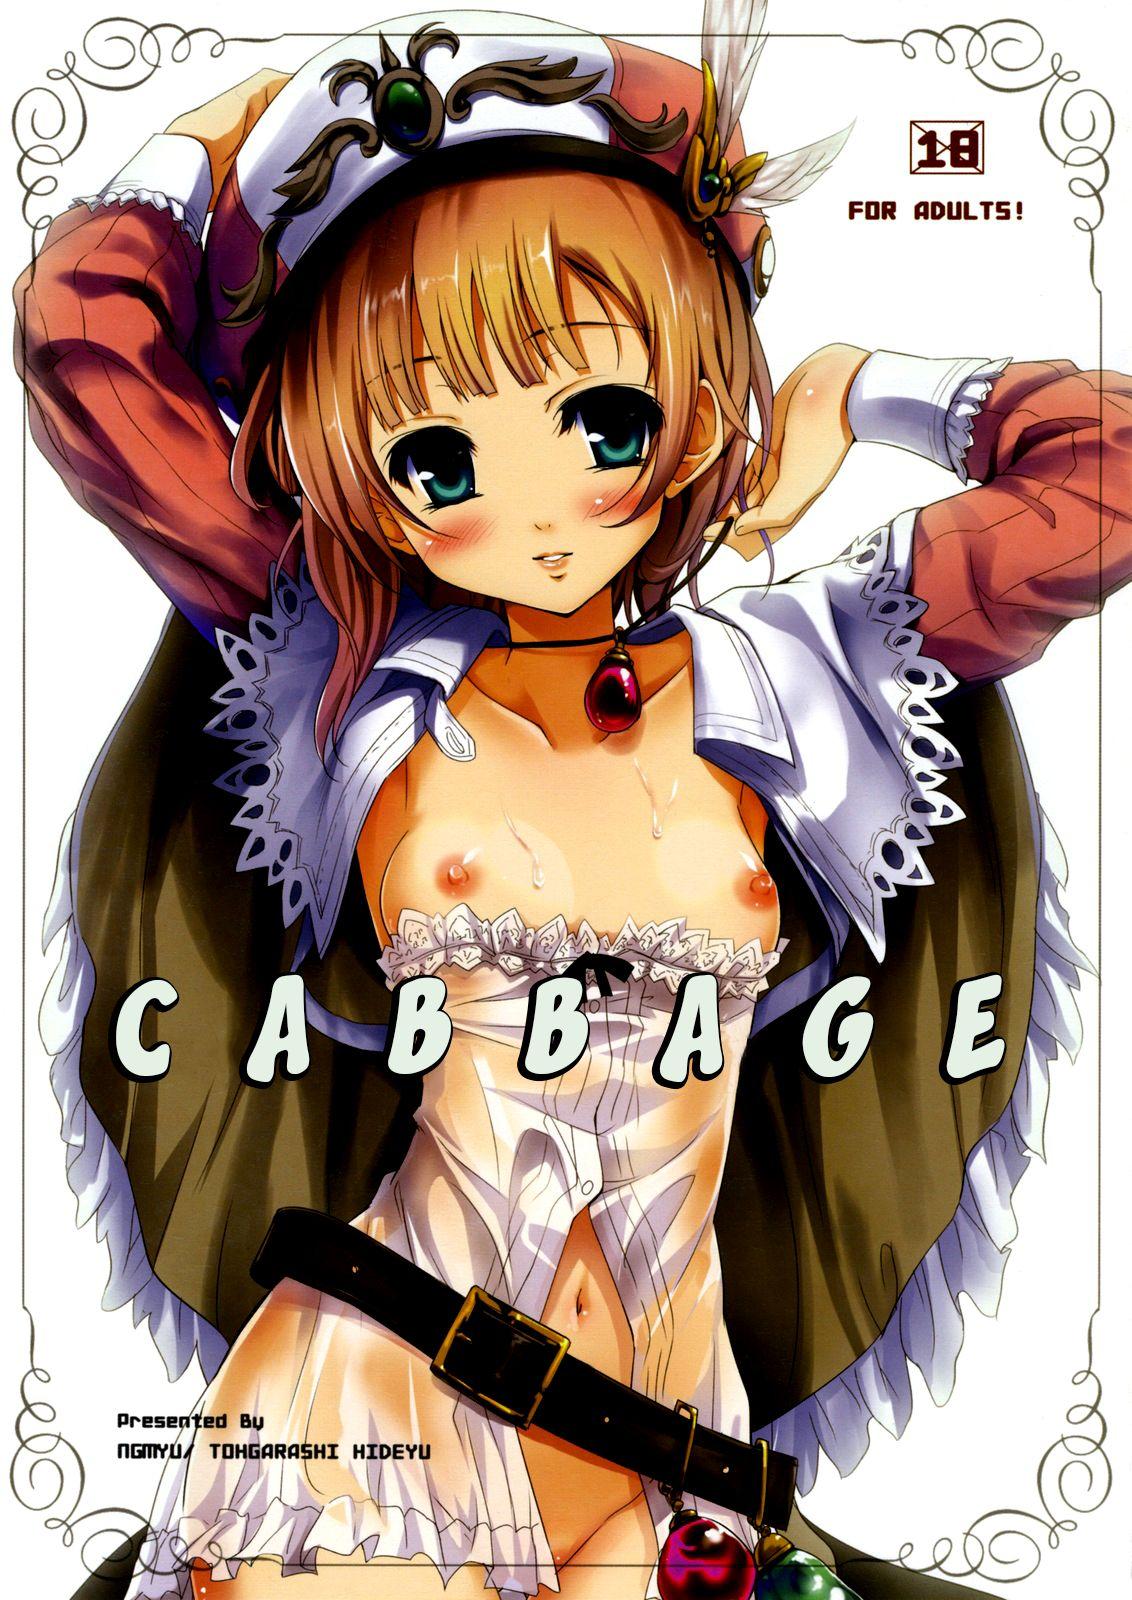 Rough Fuck Cabbage - Atelier rorona 18yo - Picture 1